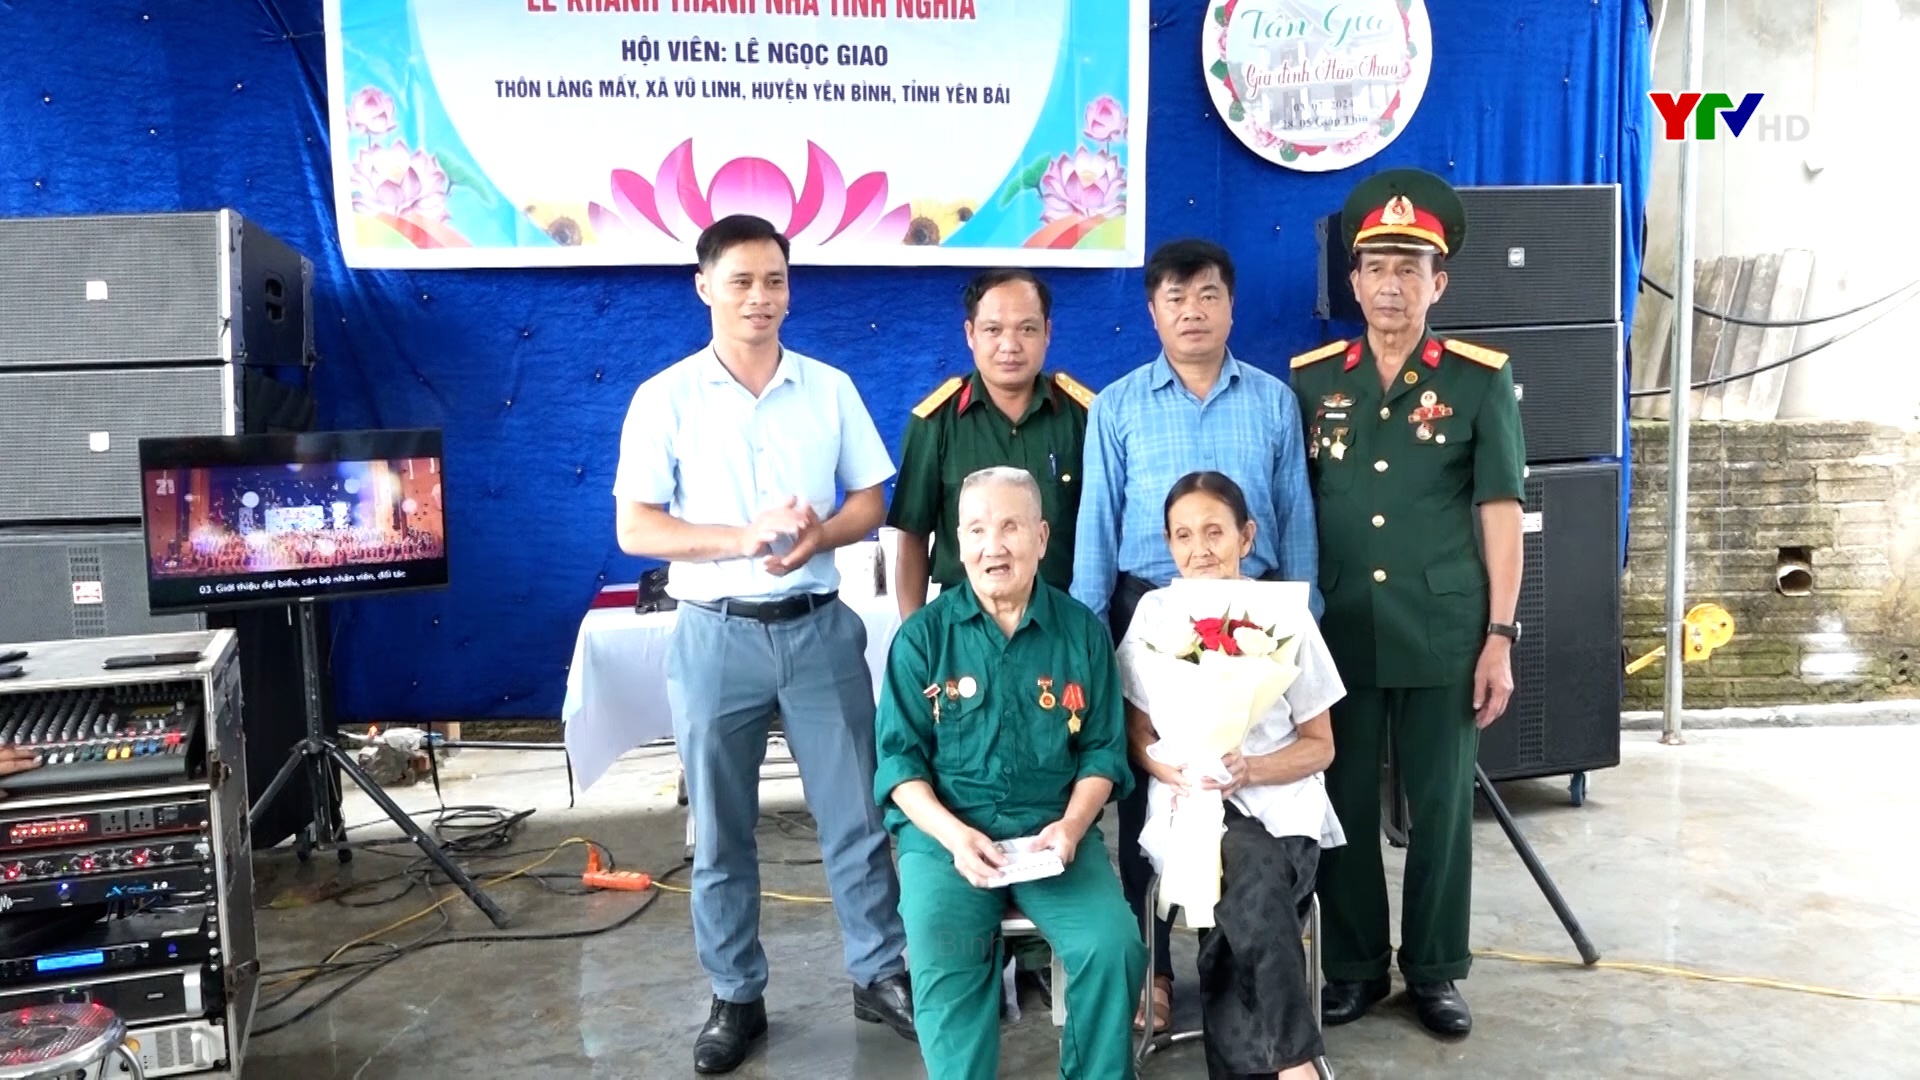 Trao tiền hỗ trợ xây dựng nhà tình nghĩa cho hội viên Hội Truyền thống Trường Sơn - đường Hồ Chí Minh tại huyện Yên Bình